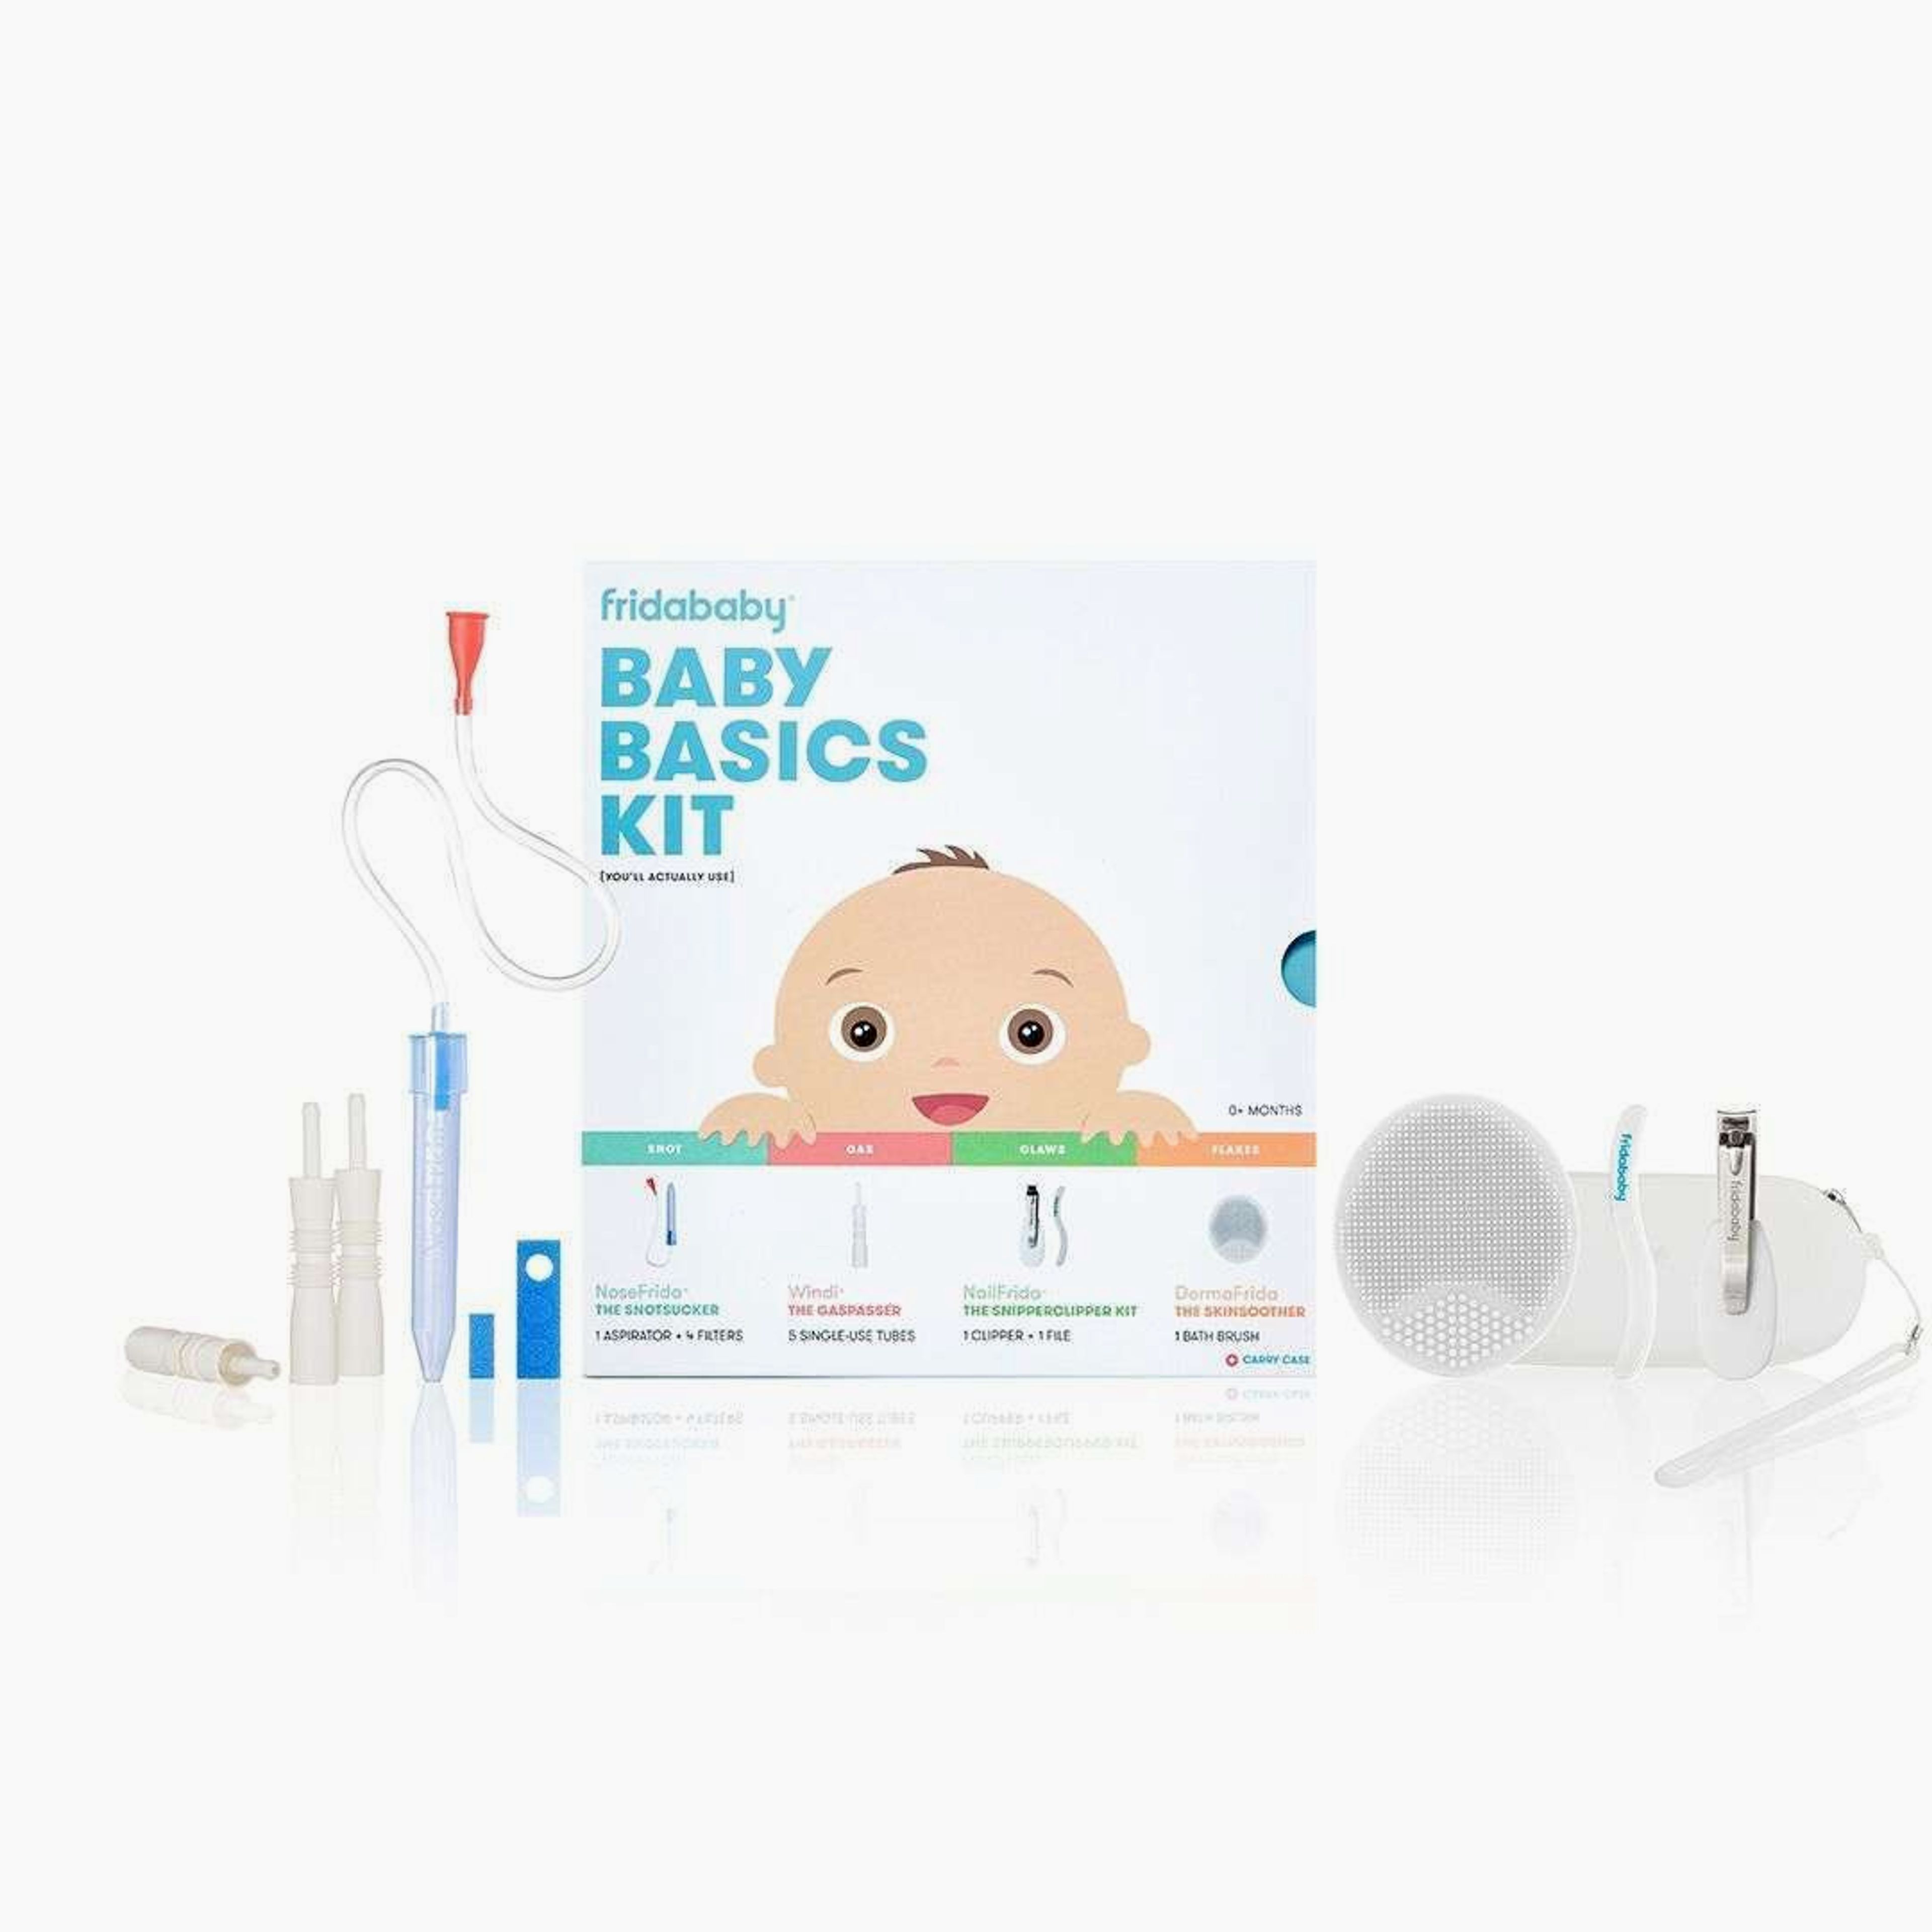 Fridababy Baby Basics Kit